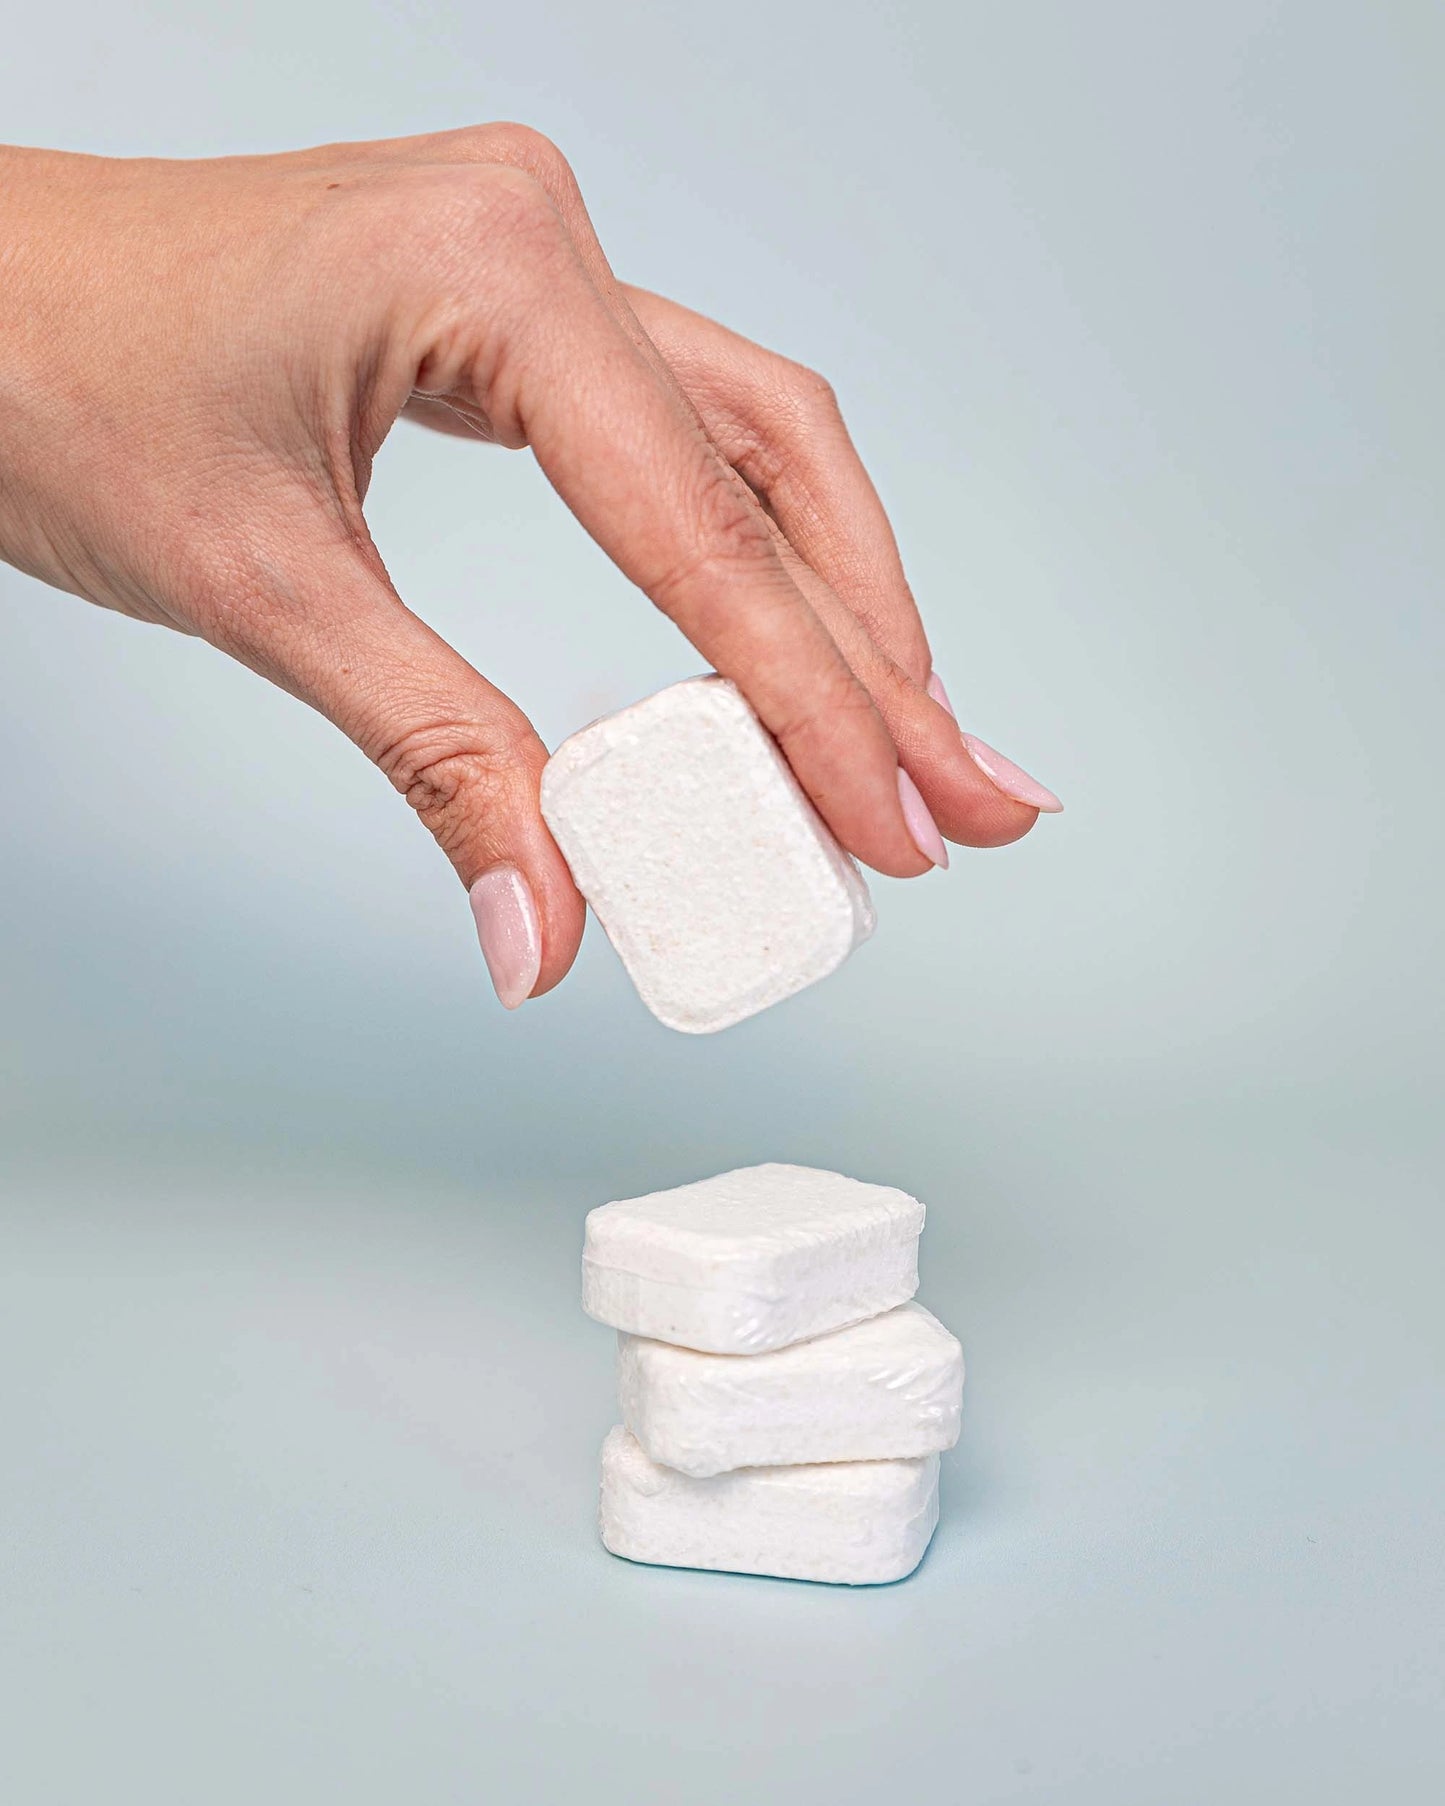 Tablettes Lave-Vaisselle Écologique 6-en-1 - 60 Pastilles